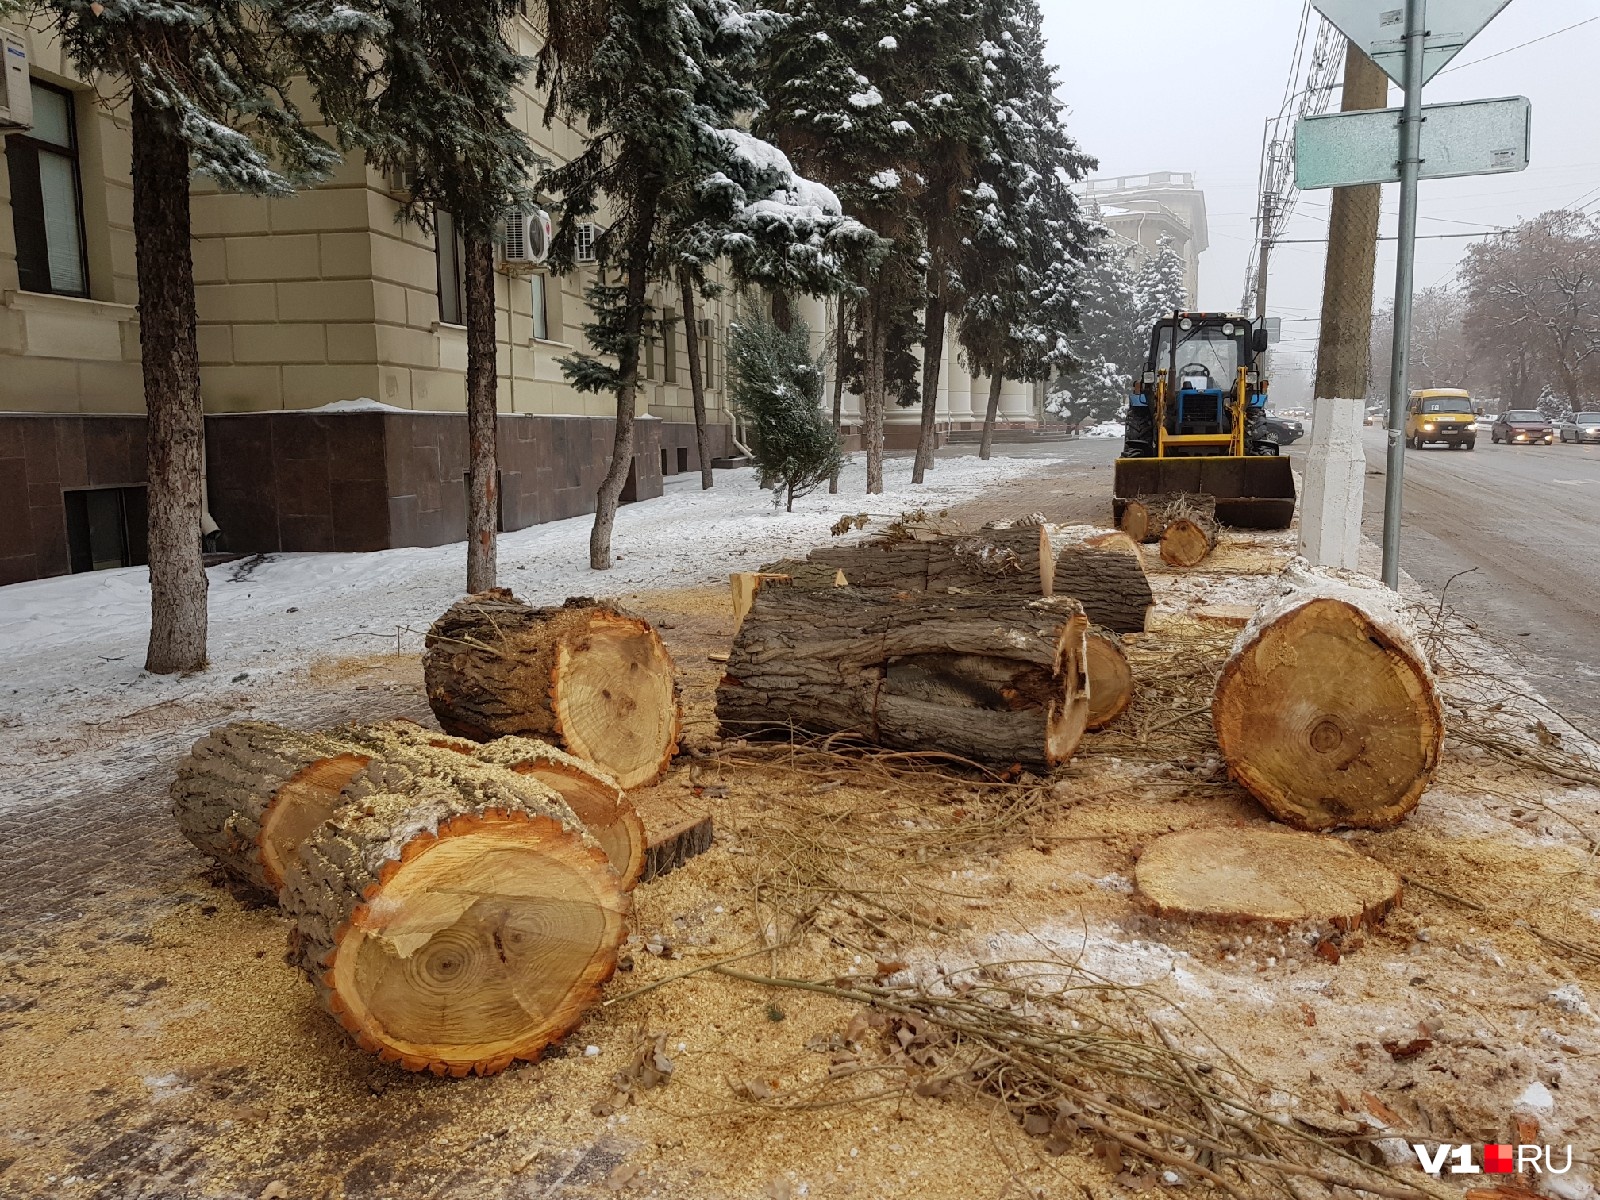 Пилим валежник. Вырубка деревьев. Вырубка деревьев в городе. Спиленные деревья в городе. Пилят дерево в городе.